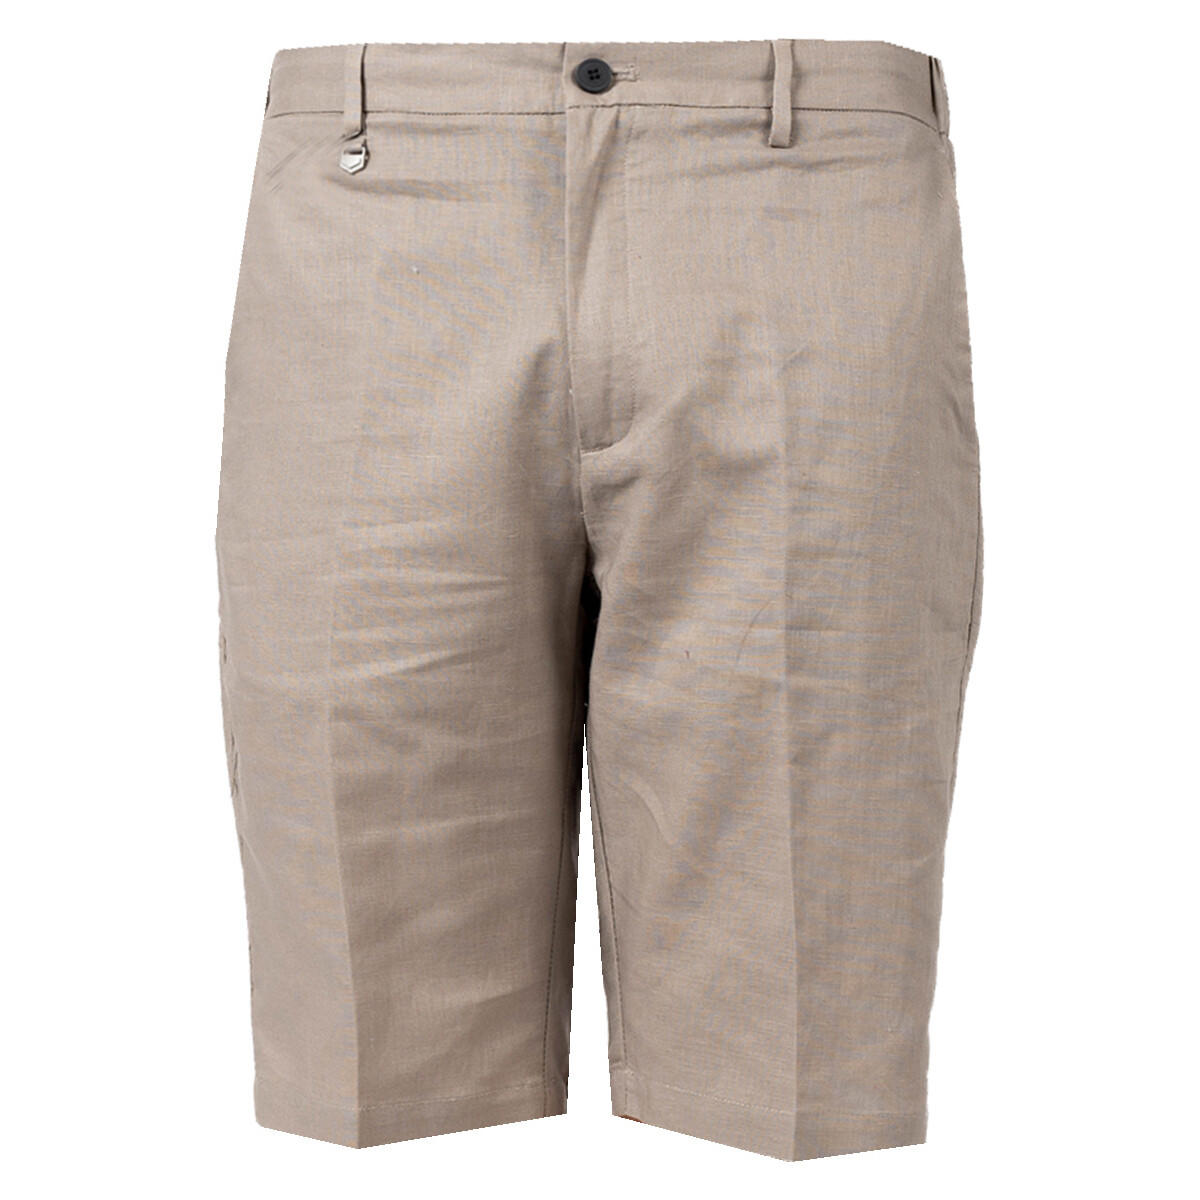 Oblačila Moški Kratke hlače & Bermuda Antony Morato MMSH00145-FA400060 Bež